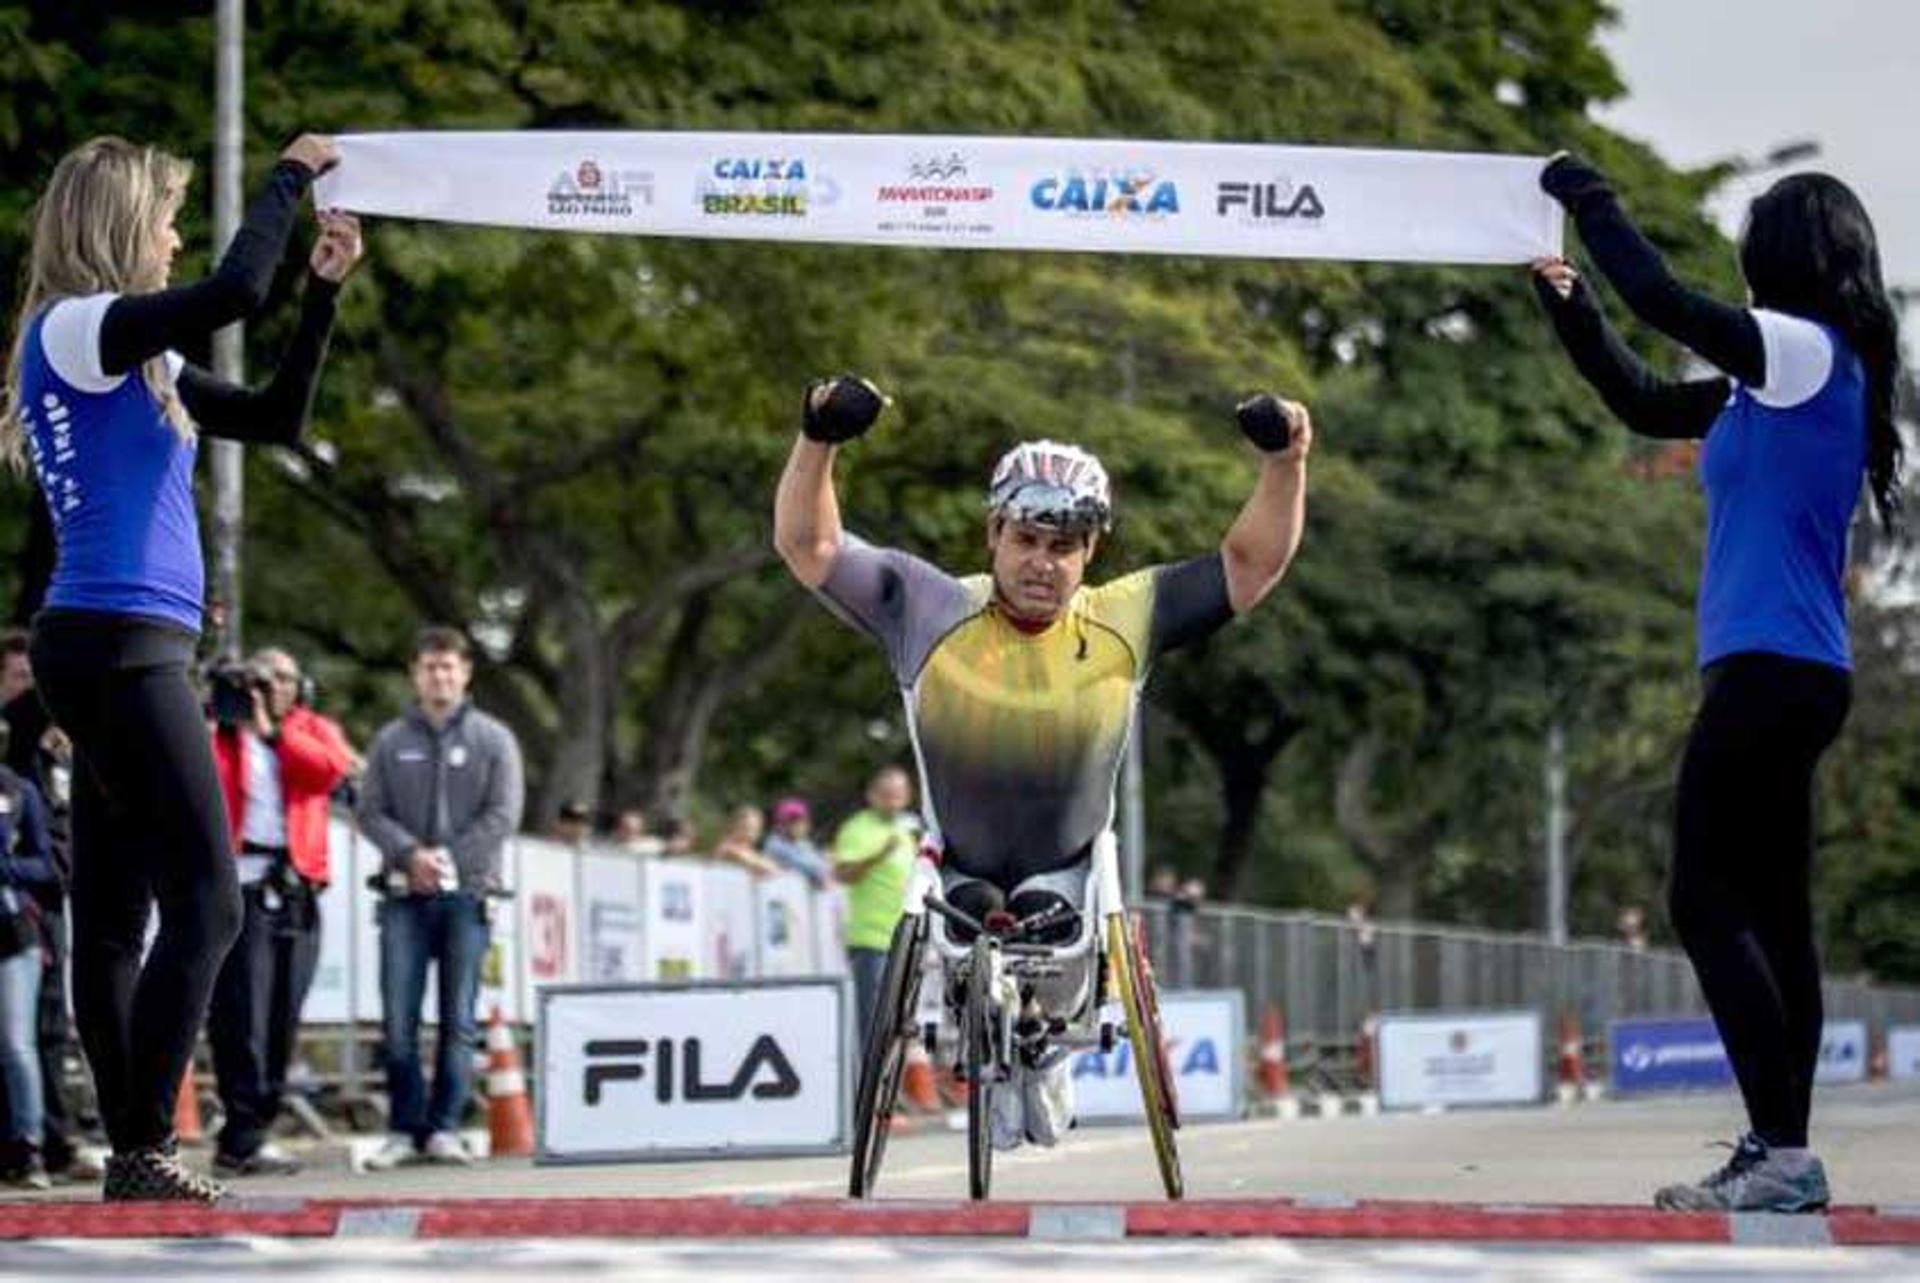 O atleta de triatlo nos Jogos Paralímpicos do Rio-2016, Aranha